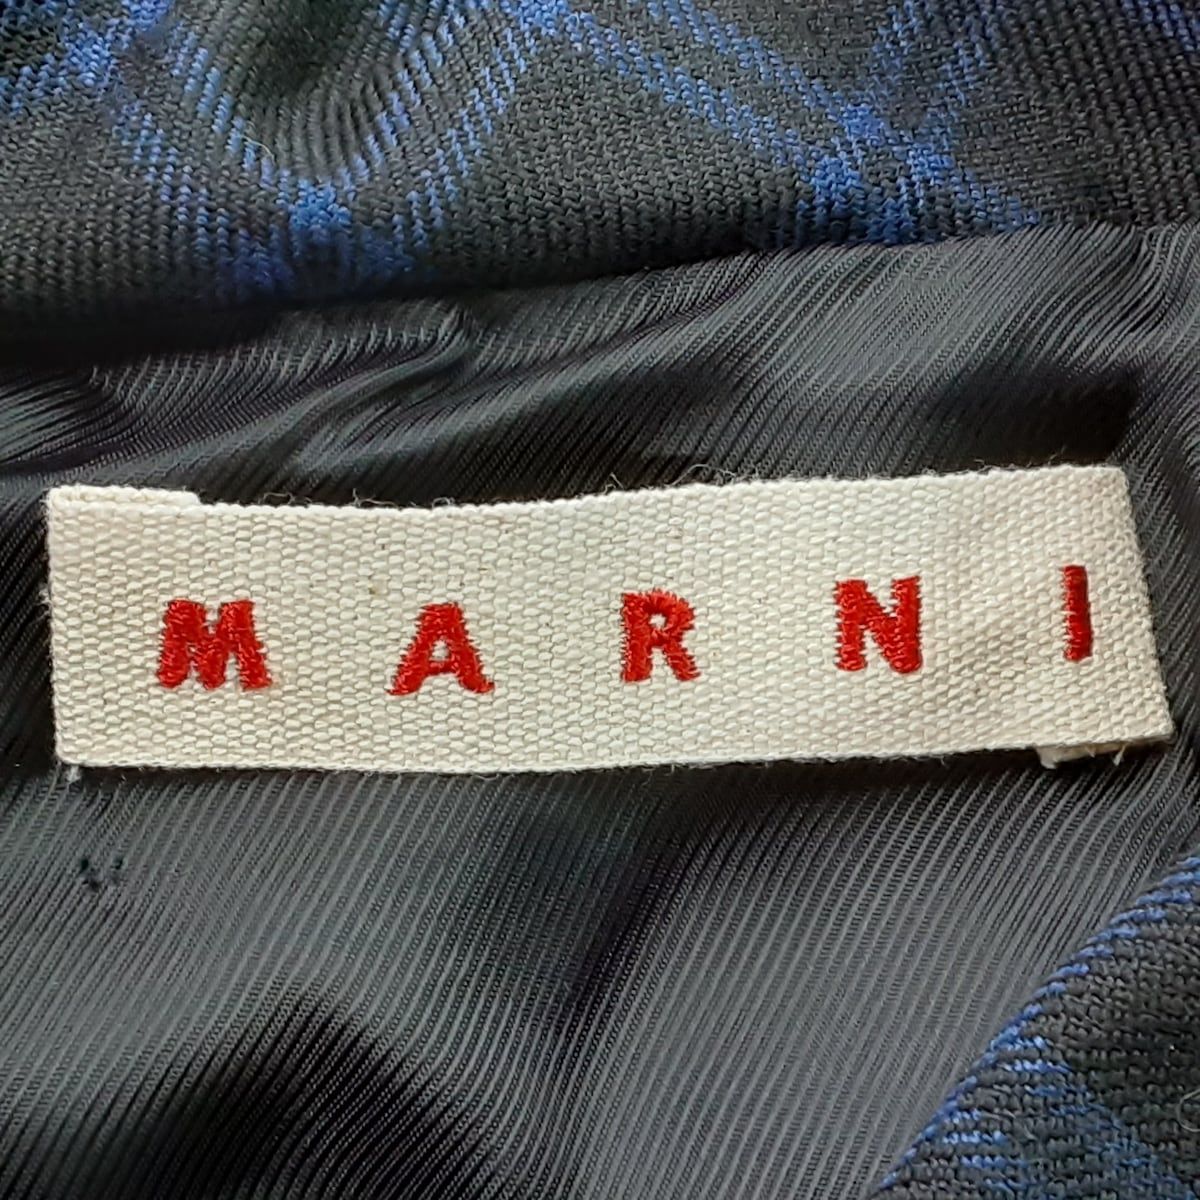 MARNI(マルニ) コート サイズ38 S レディース美品 - 黒×ネイビー 長袖